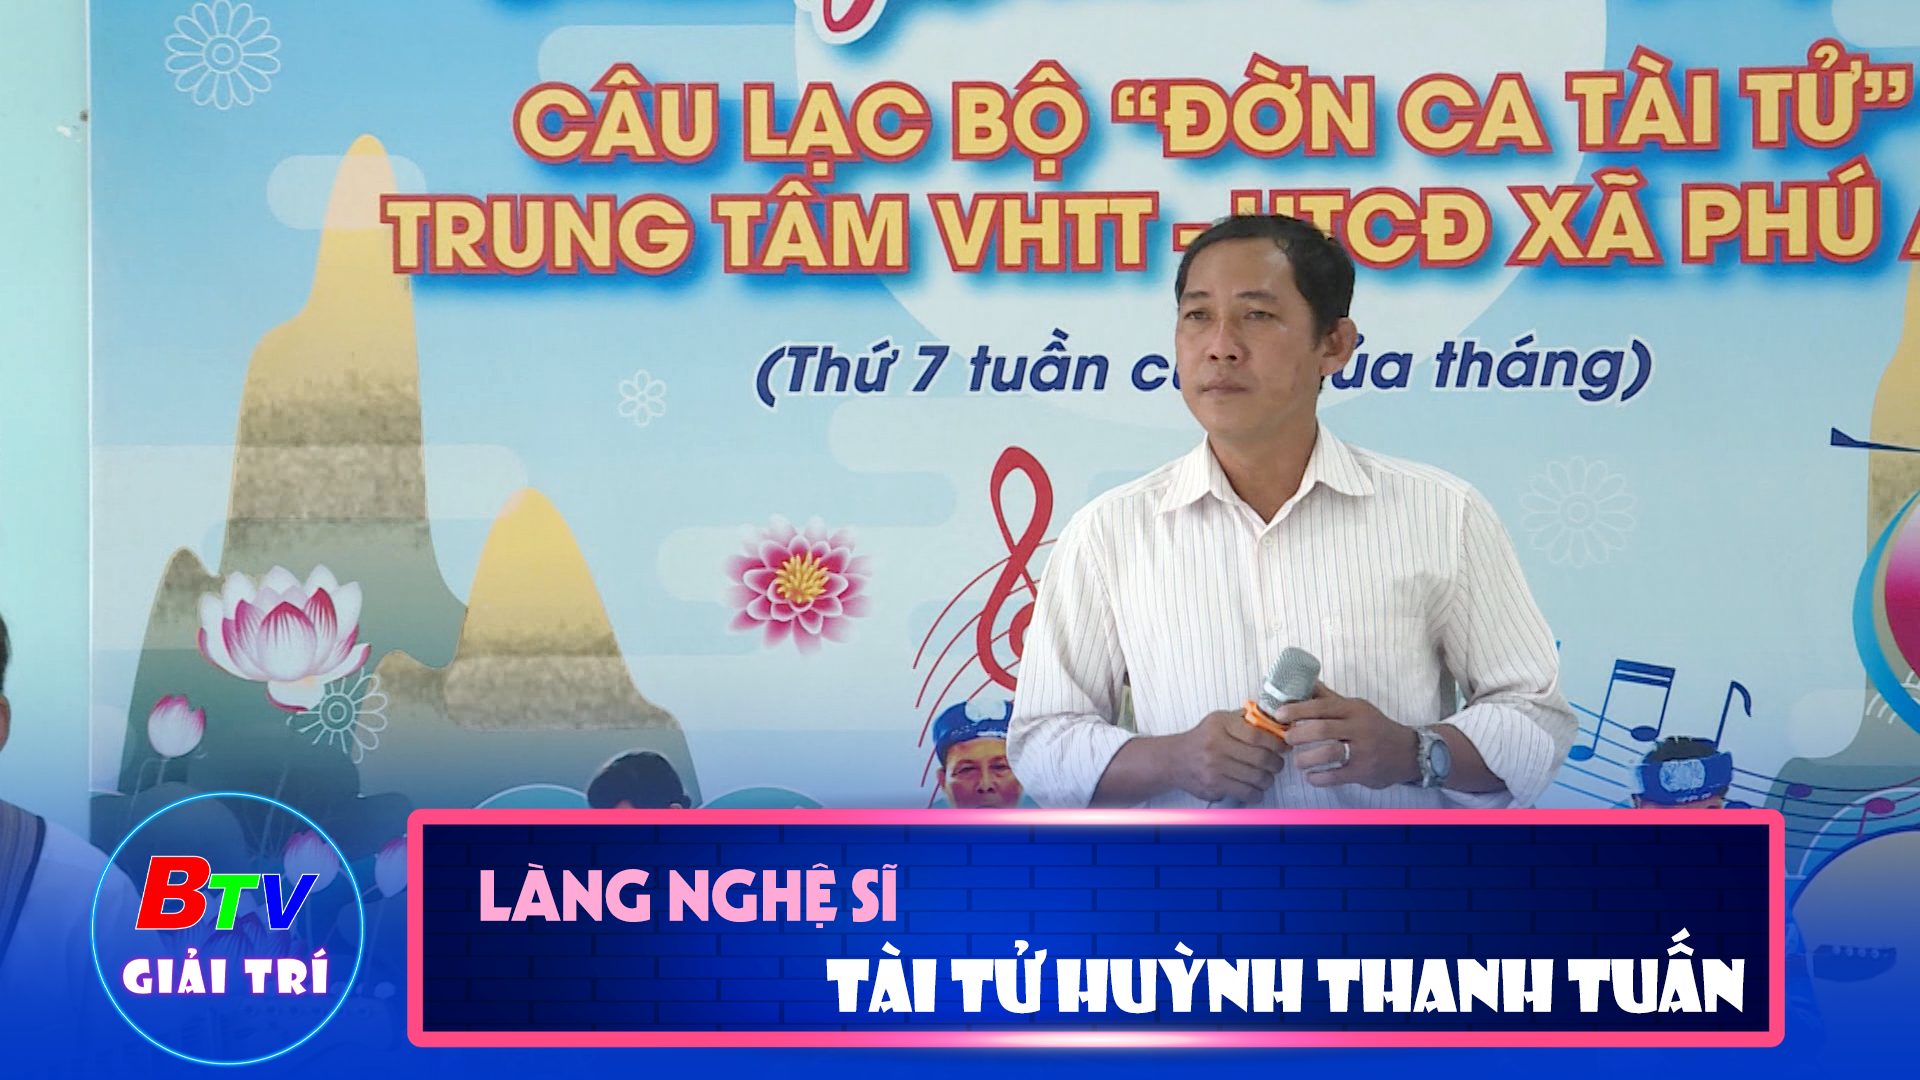 Tài tử Huỳnh Thanh Tuấn